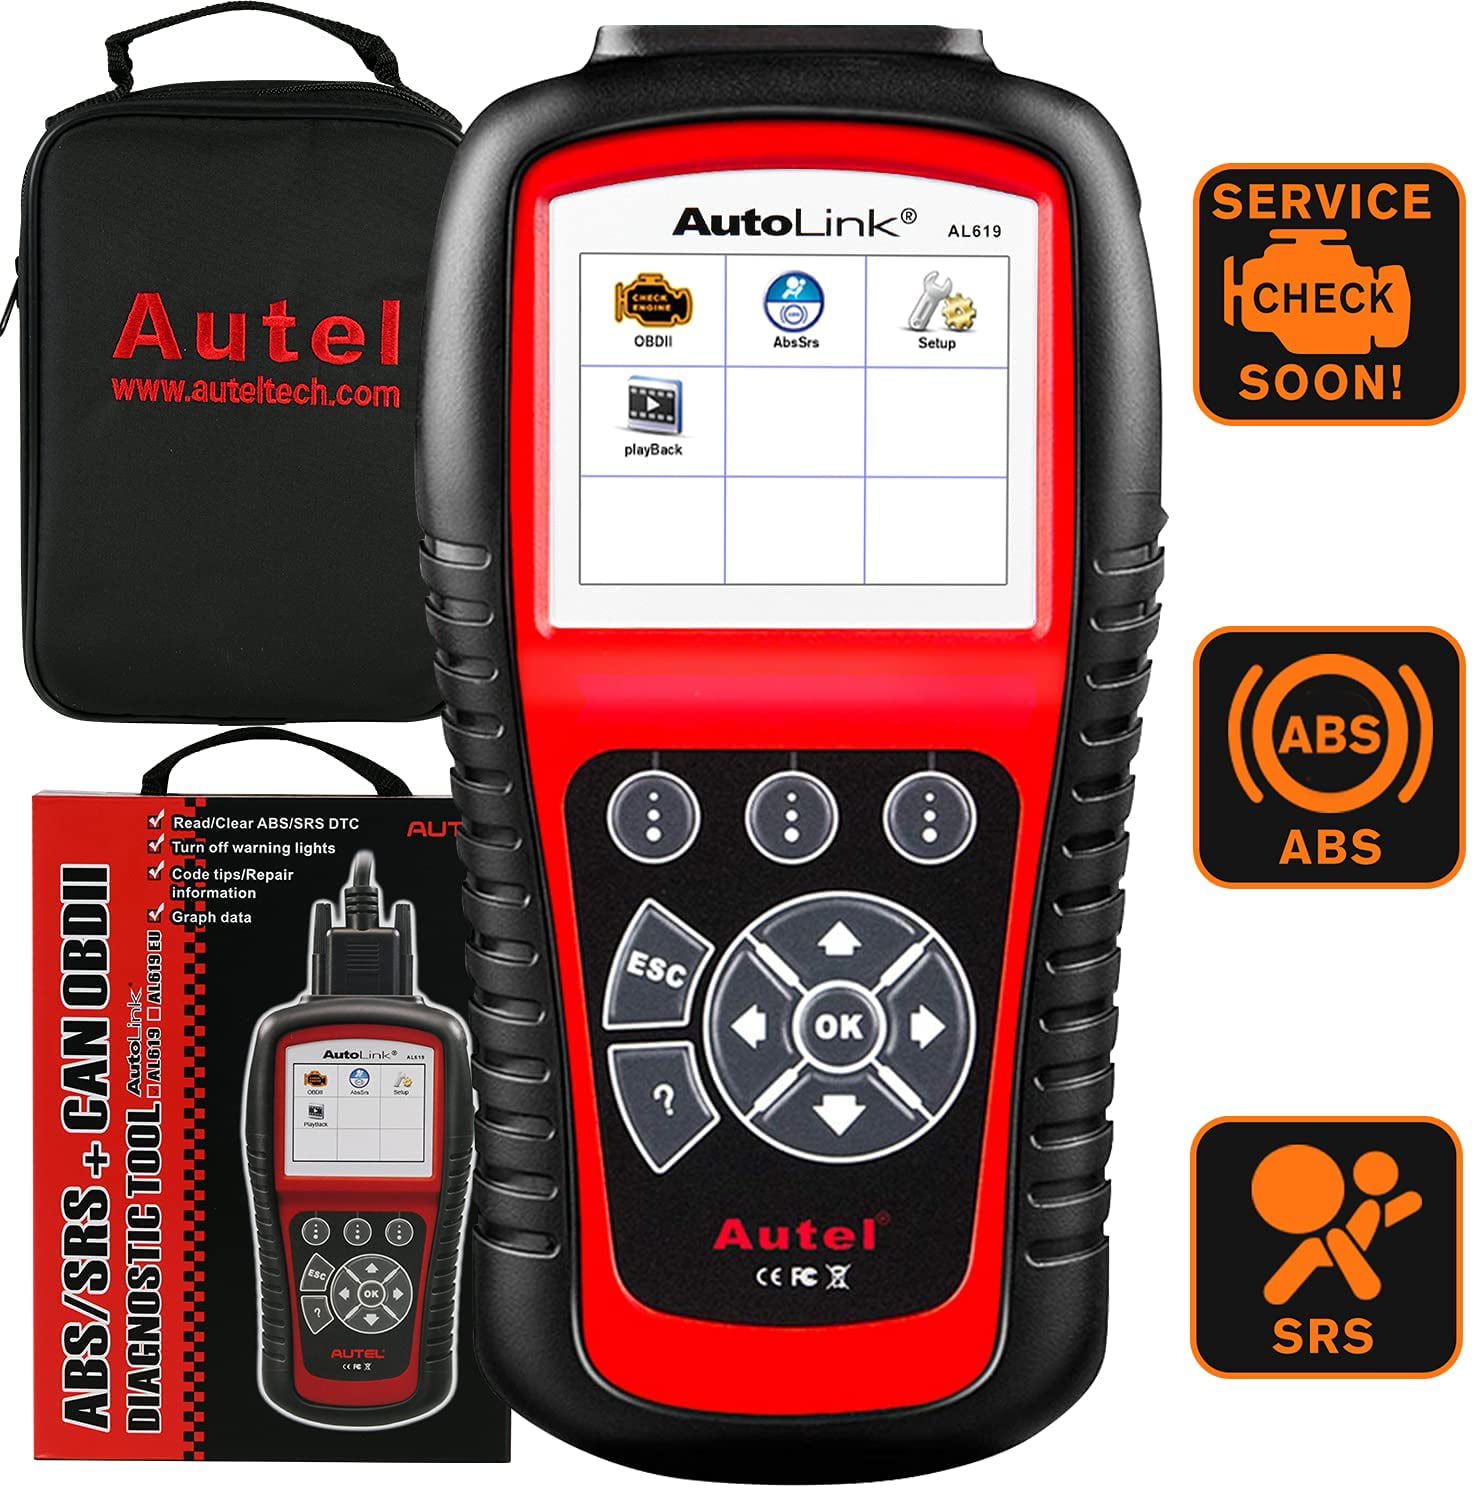 Details about   Autel ML619 AL619 OBD2 Diagnostic Tool OBD Code Reader ABS SRS Airbag Scanner US 